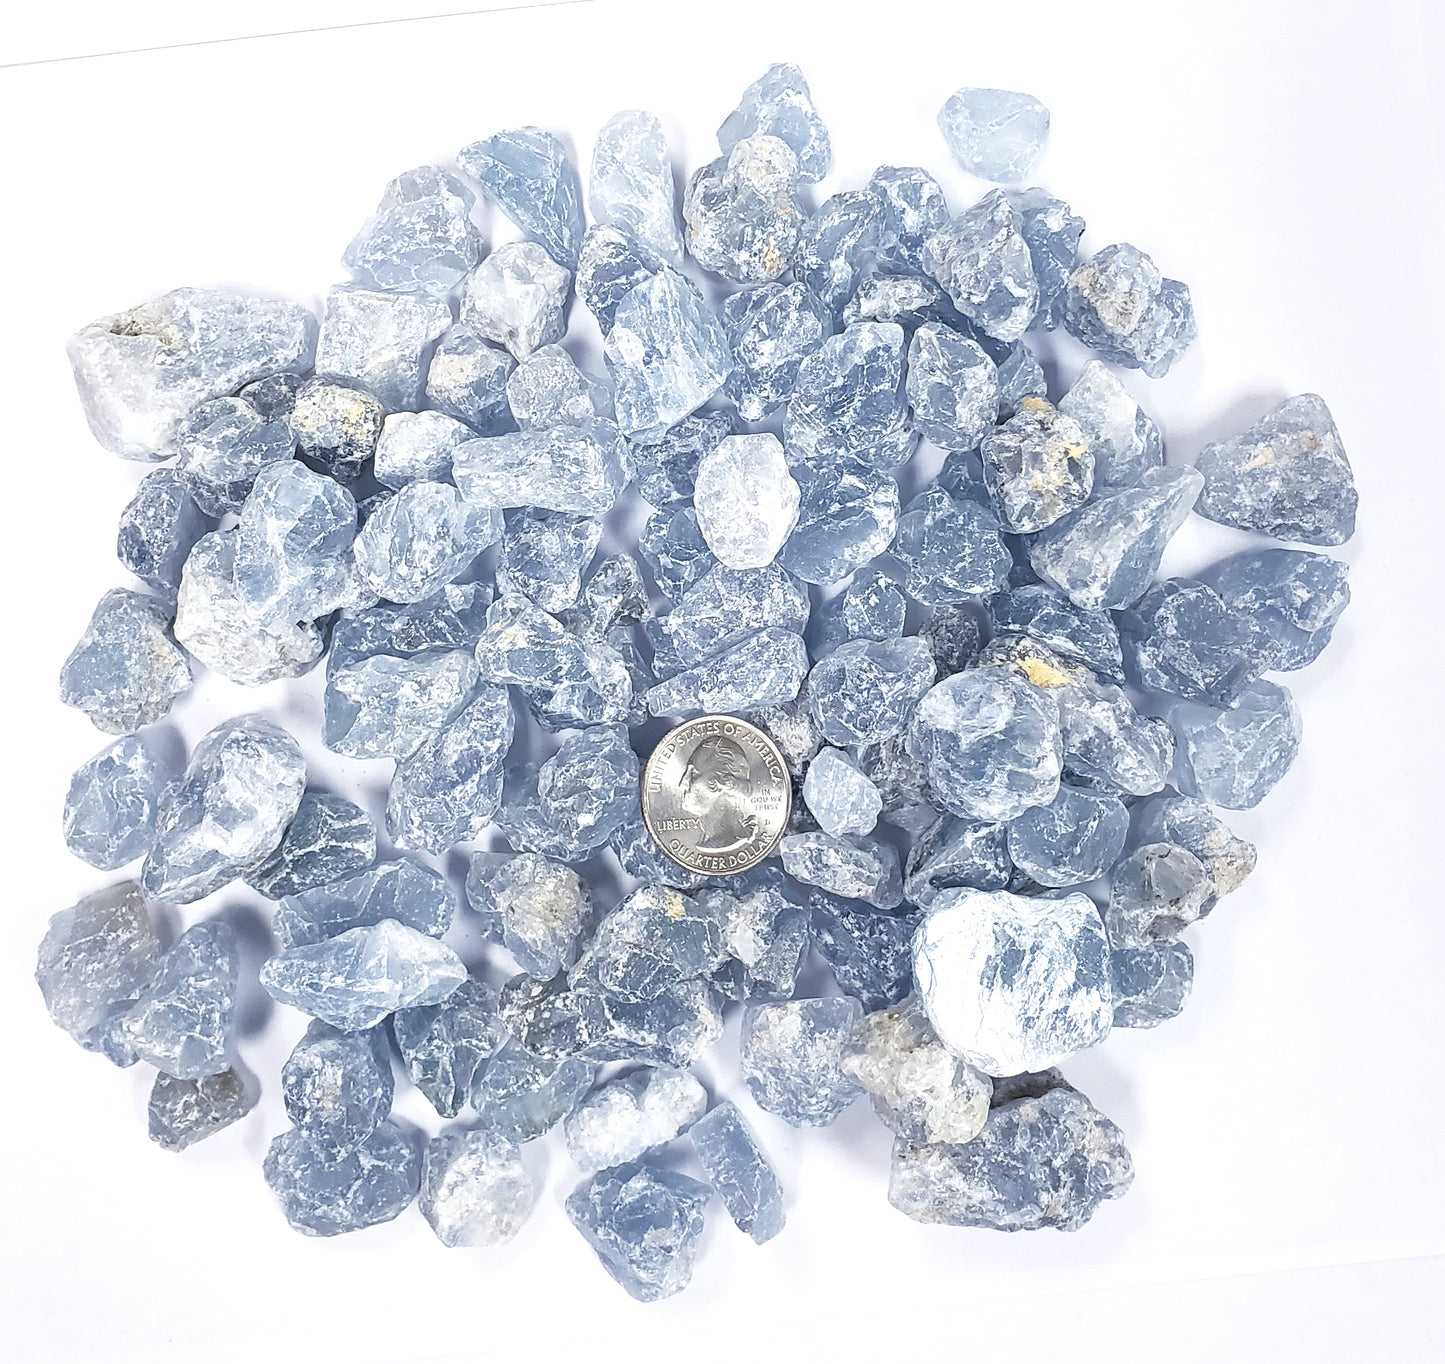 Rough Celestite Crystals - Bulk Rough Stones